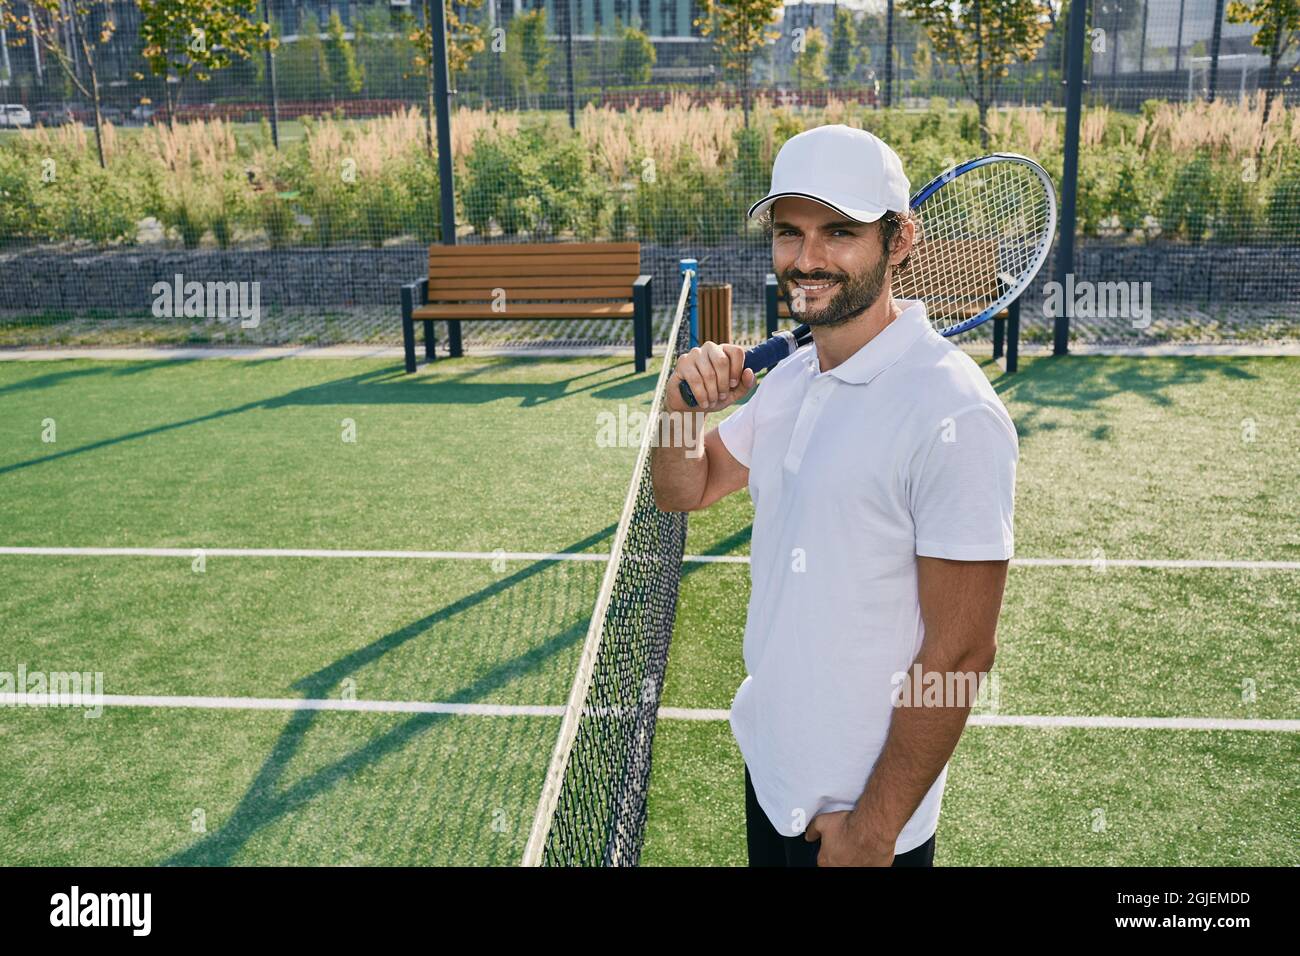 Giocatore professionista di tennis con racket in posa vicino alla rete sul campo da tennis in erba Foto Stock